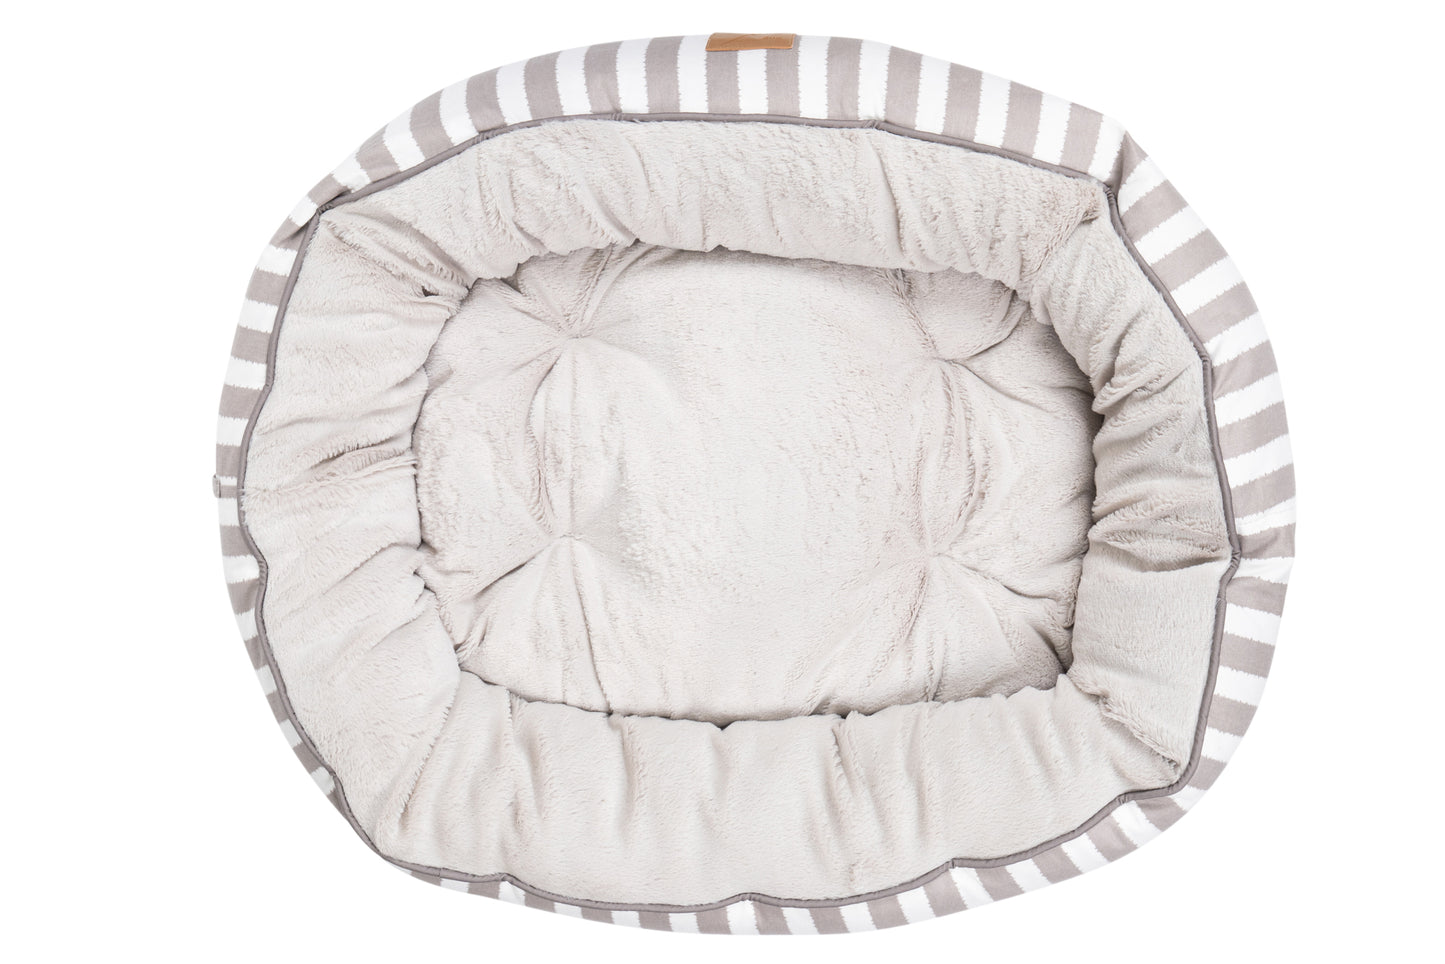 Mog & Bone 4 Seasons Reversible Circular Dog Bed - Latte Hamptons Stripe Print